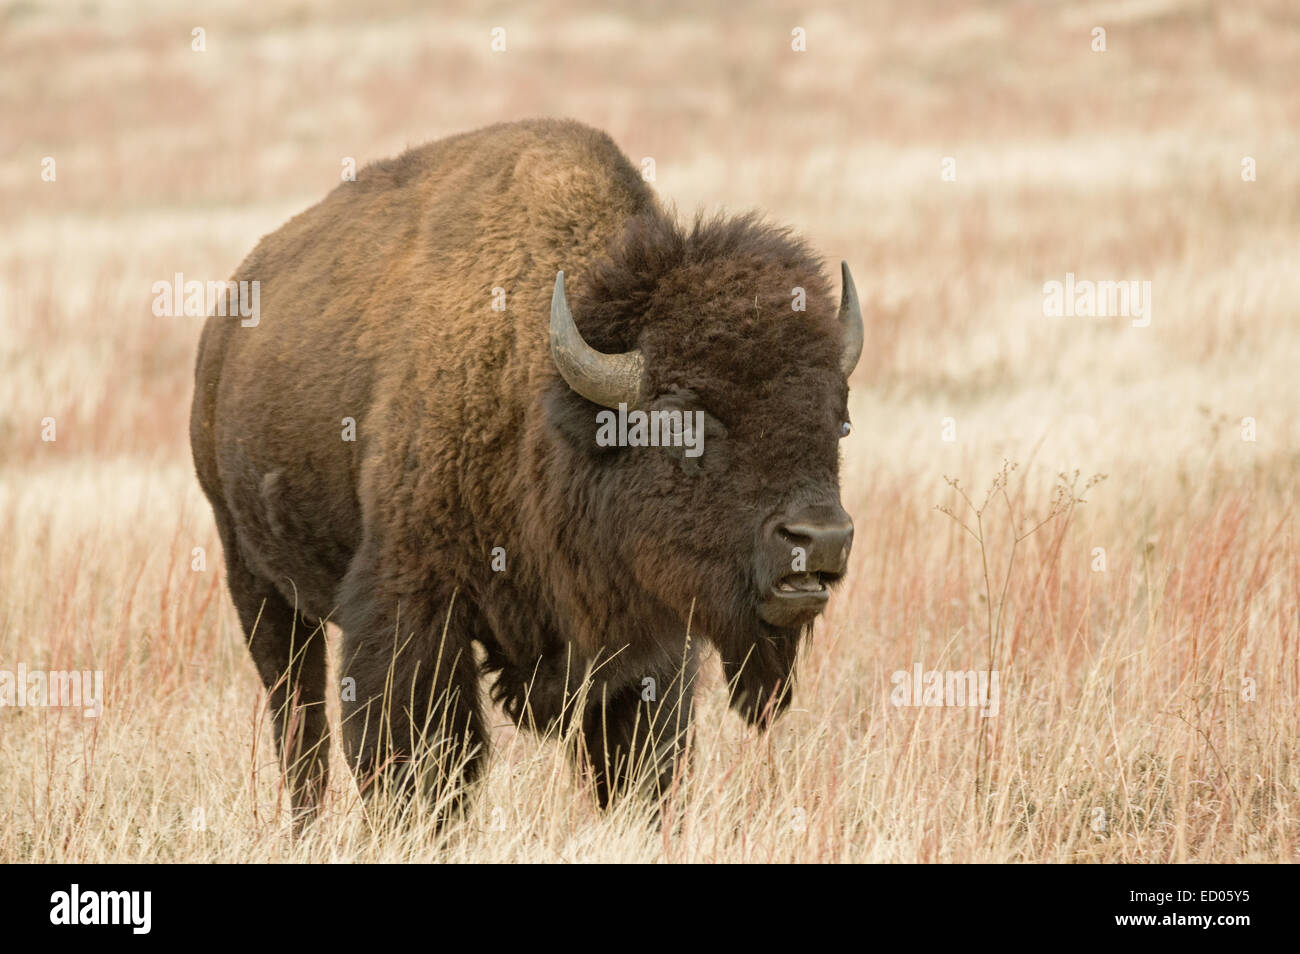 El bisonte o búfalo americano en el campo de la pradera con la boca abierta Foto de stock